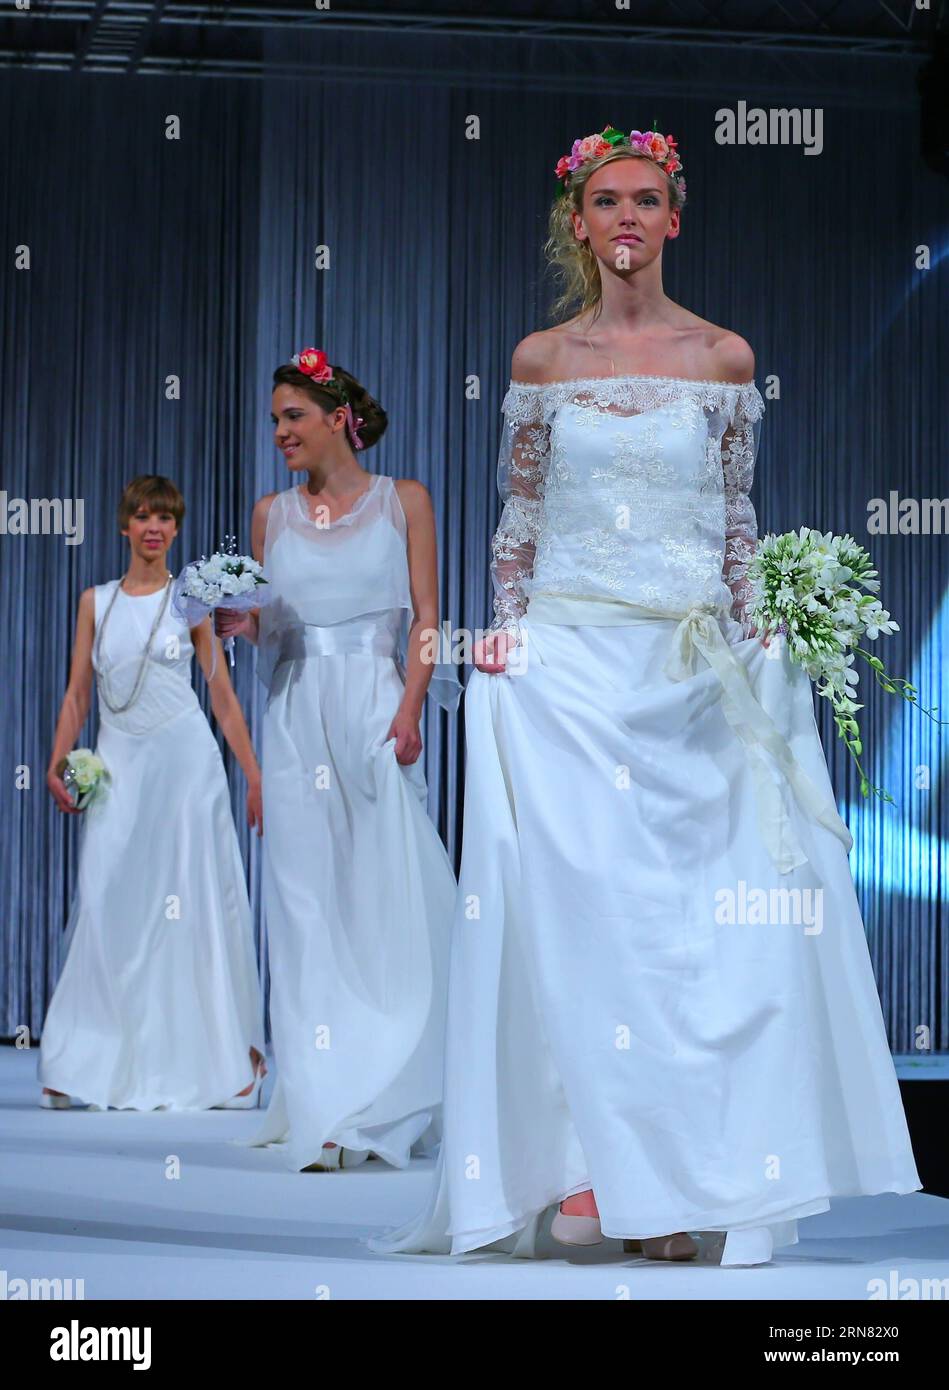 151003) -- BRUSELAS, 3 de octubre de 2015 -- Las modelos exhiben vestidos  de novia durante un show de vestidos de novia en Bruselas, capital de  Bélgica, el 2 de octubre de